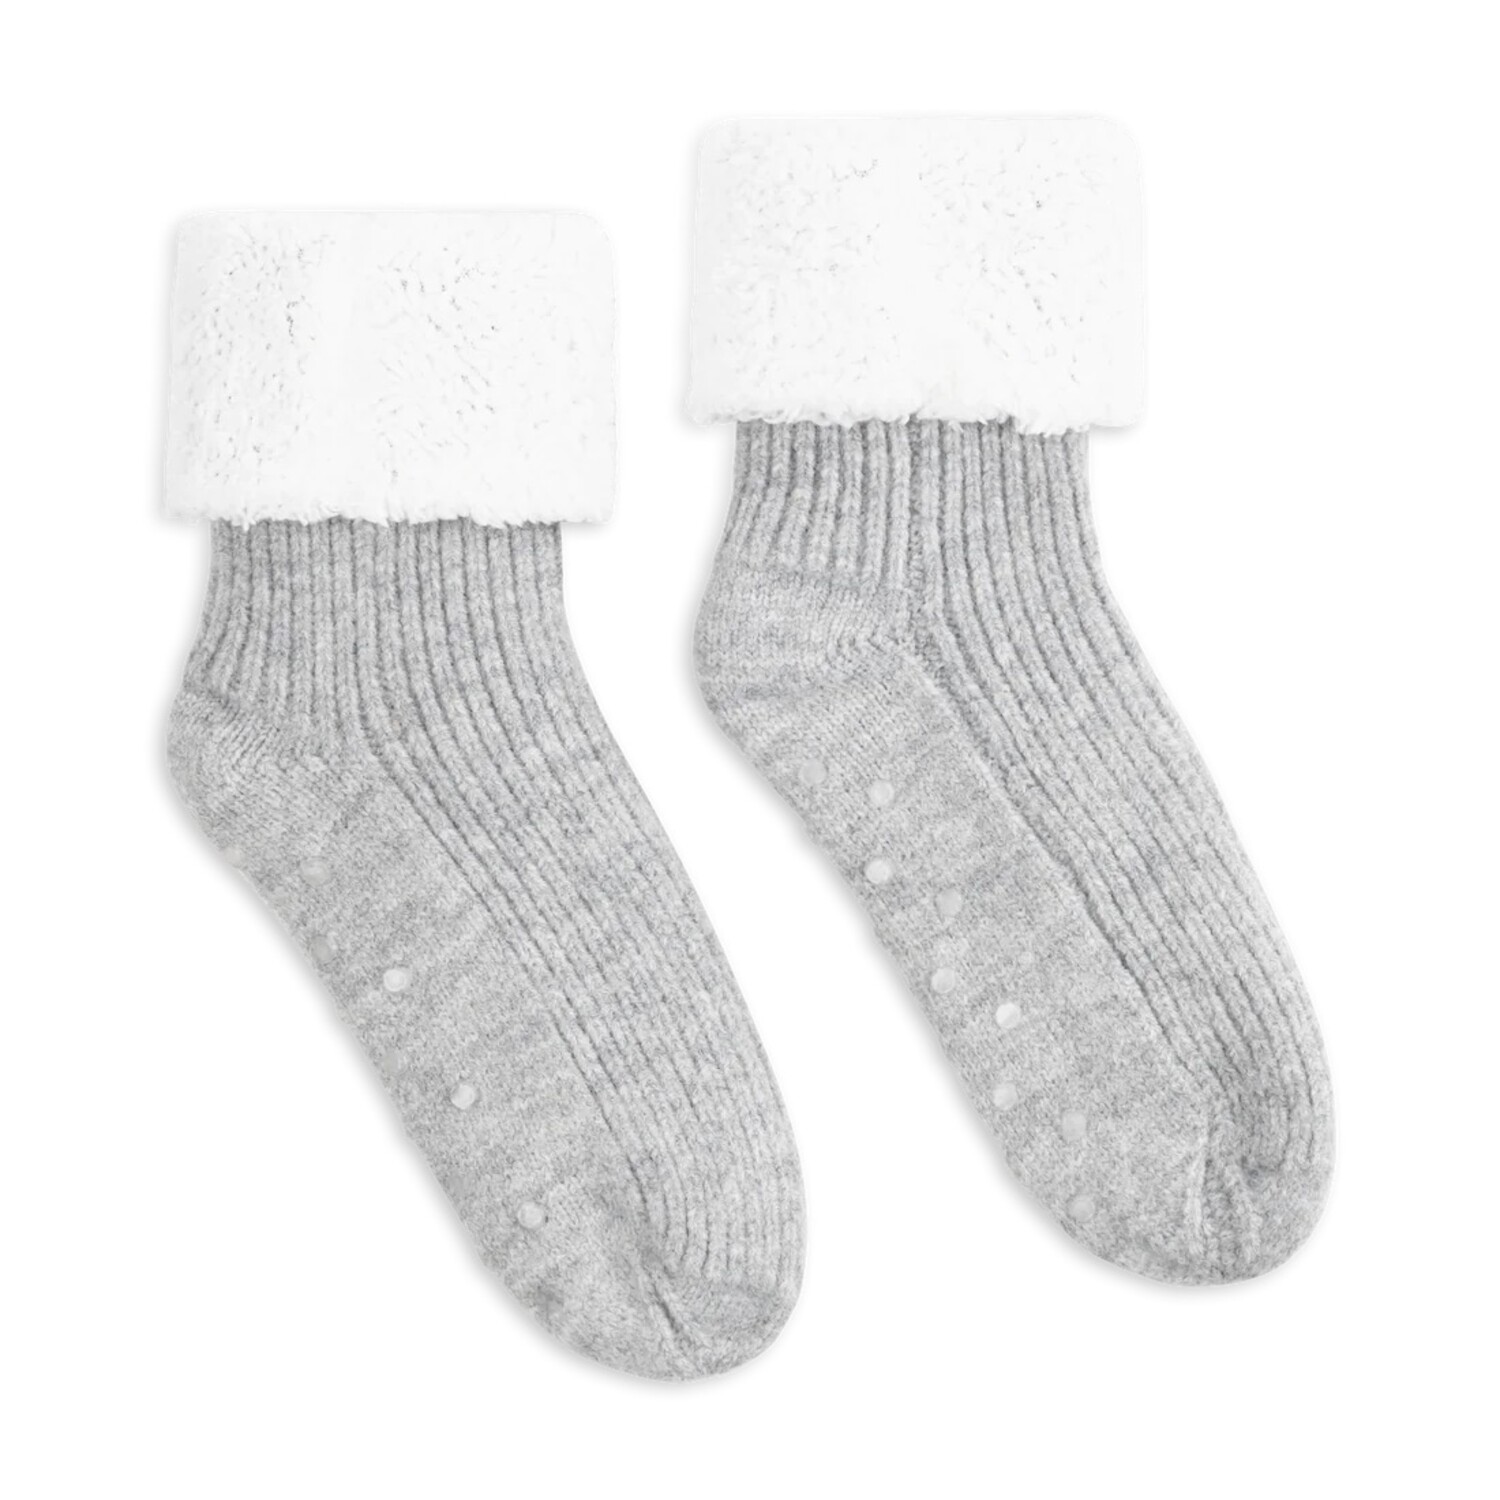 LEMON LOUNGEWEAR Slipper Socks  Dan Joyce Clothing - Dan Joyce